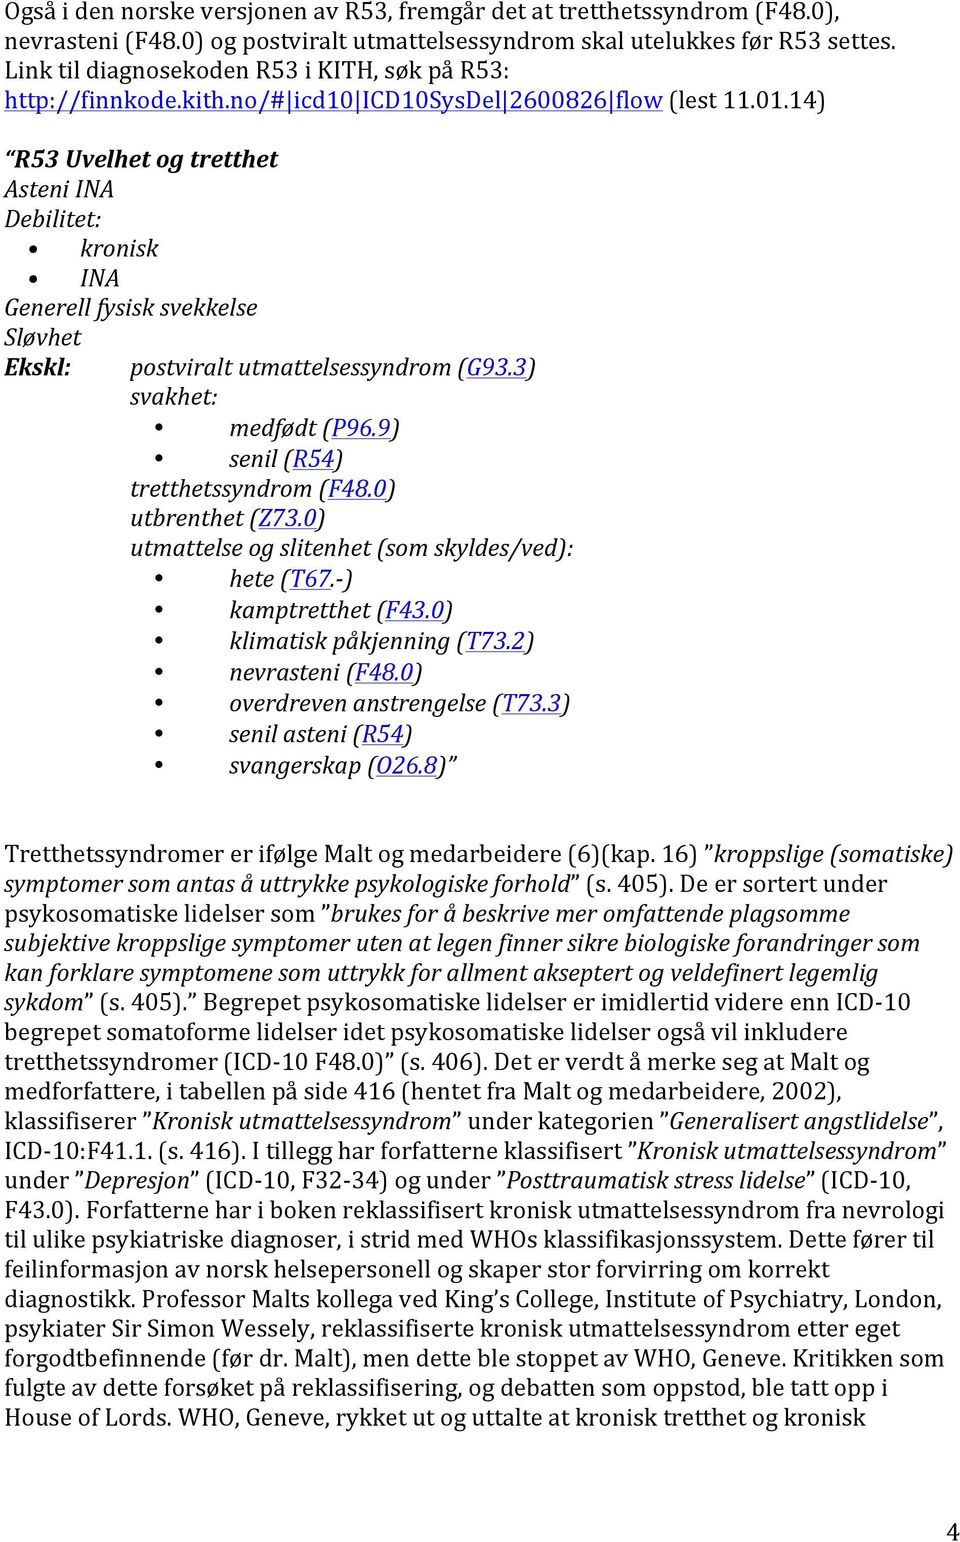 14) R53 Uvelhet og tretthet Asteni INA Debilitet: kronisk INA Generell fysisk svekkelse Sløvhet Ekskl: postviralt utmattelsessyndrom (G93.3) svakhet: medfødt (P96.9) senil (R54) tretthetssyndrom (F48.